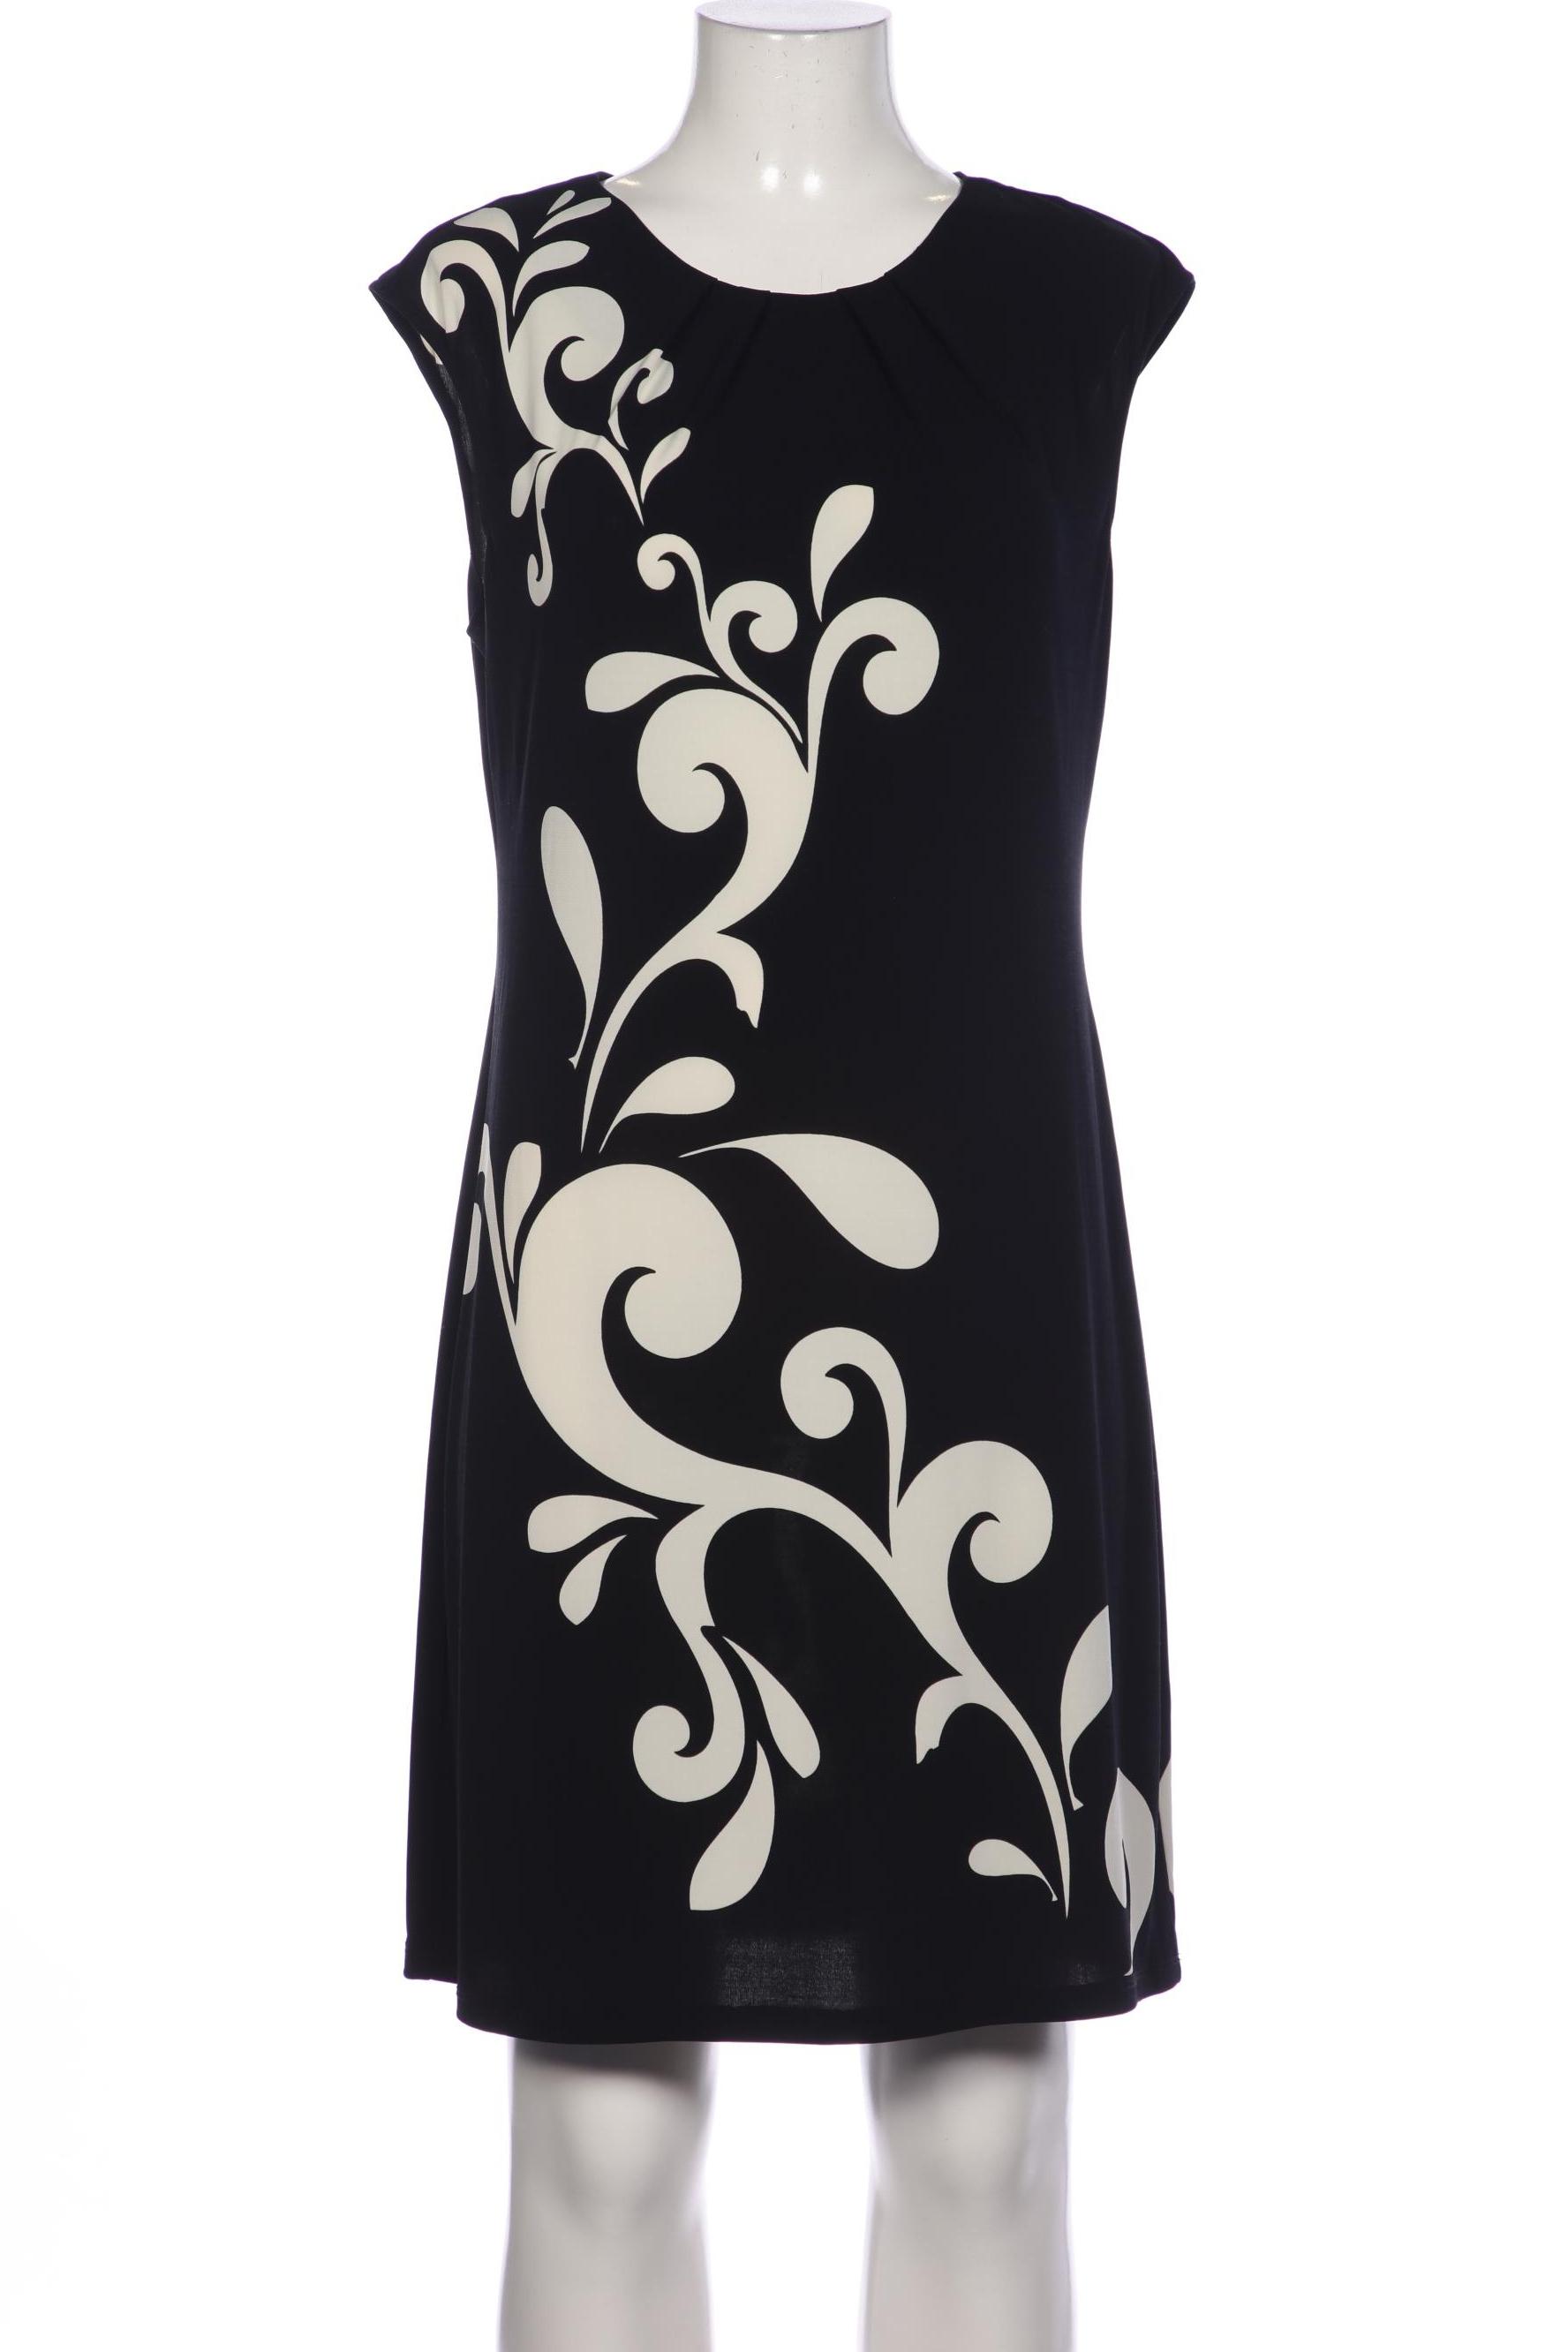 Montego Damen Kleid, schwarz, Gr. 42 von montego